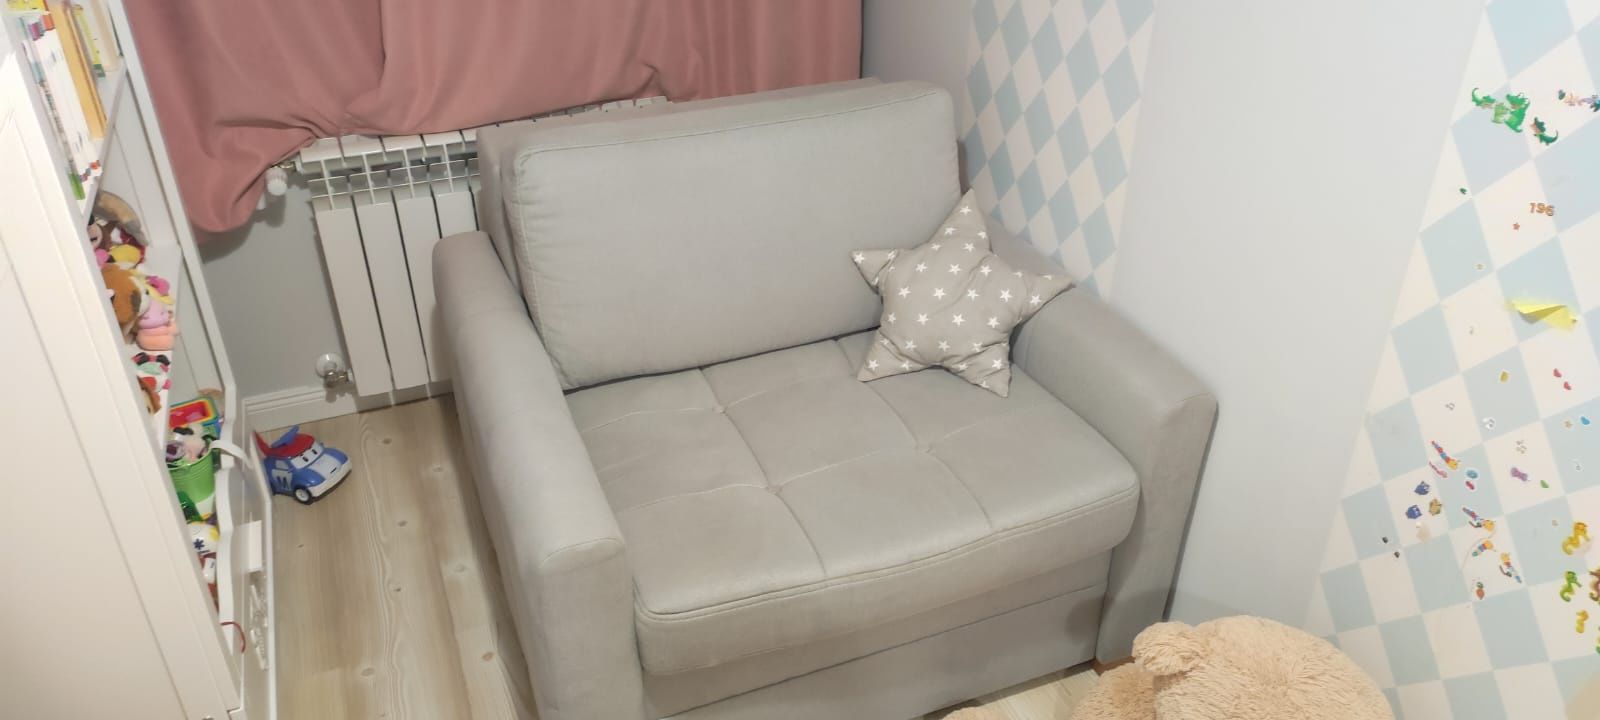 Sofa " Amerykanka" jednoosobowa 80x205cm